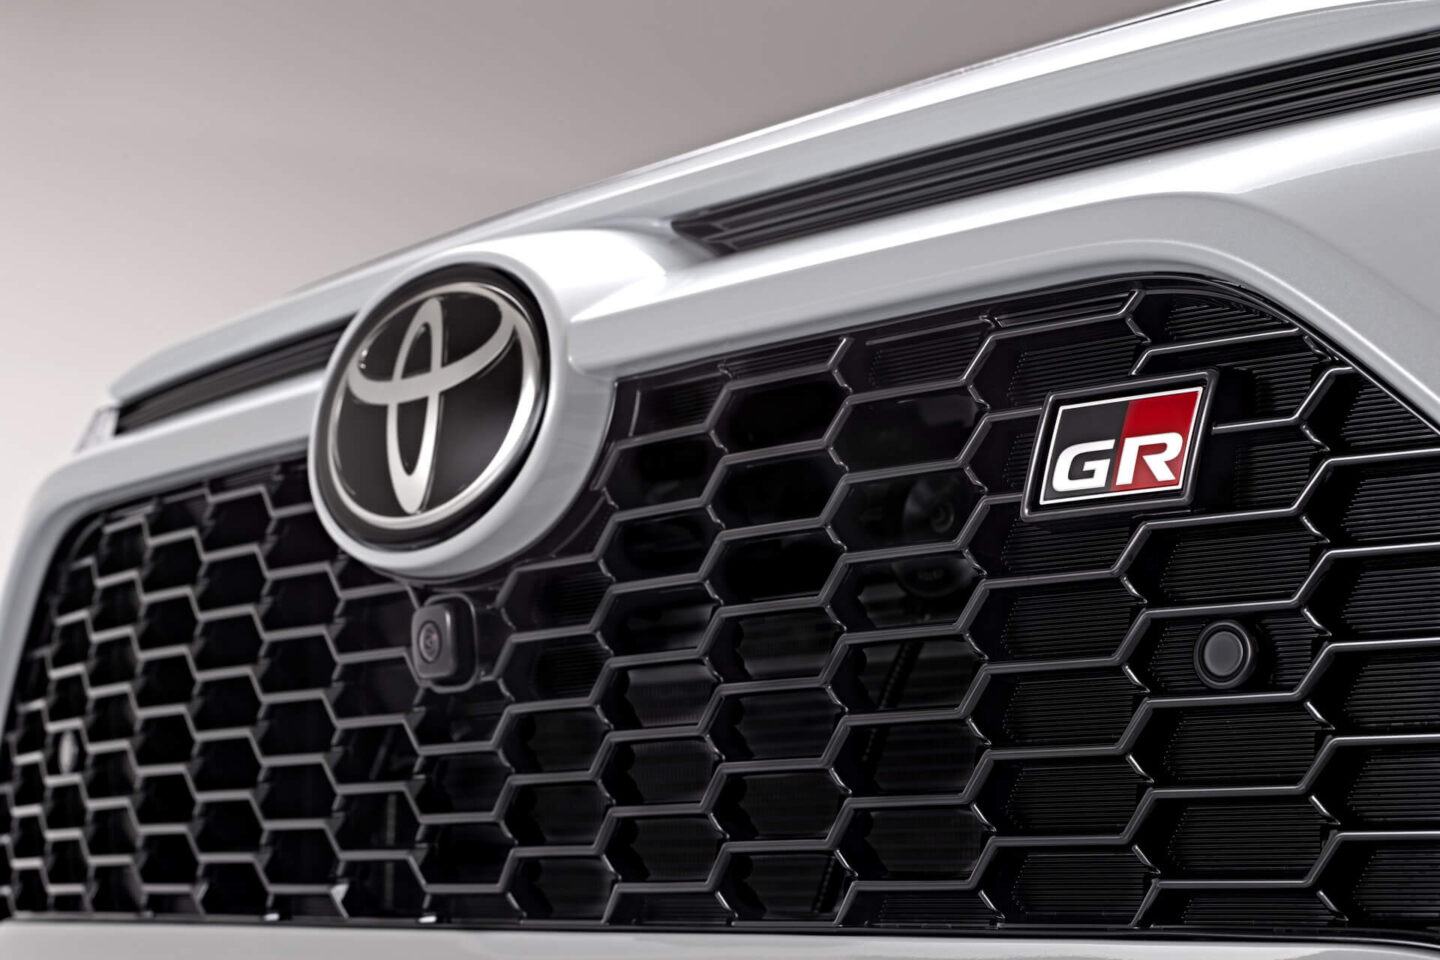 Toyota RAV4 GR Sport pormenor grelha dianteira